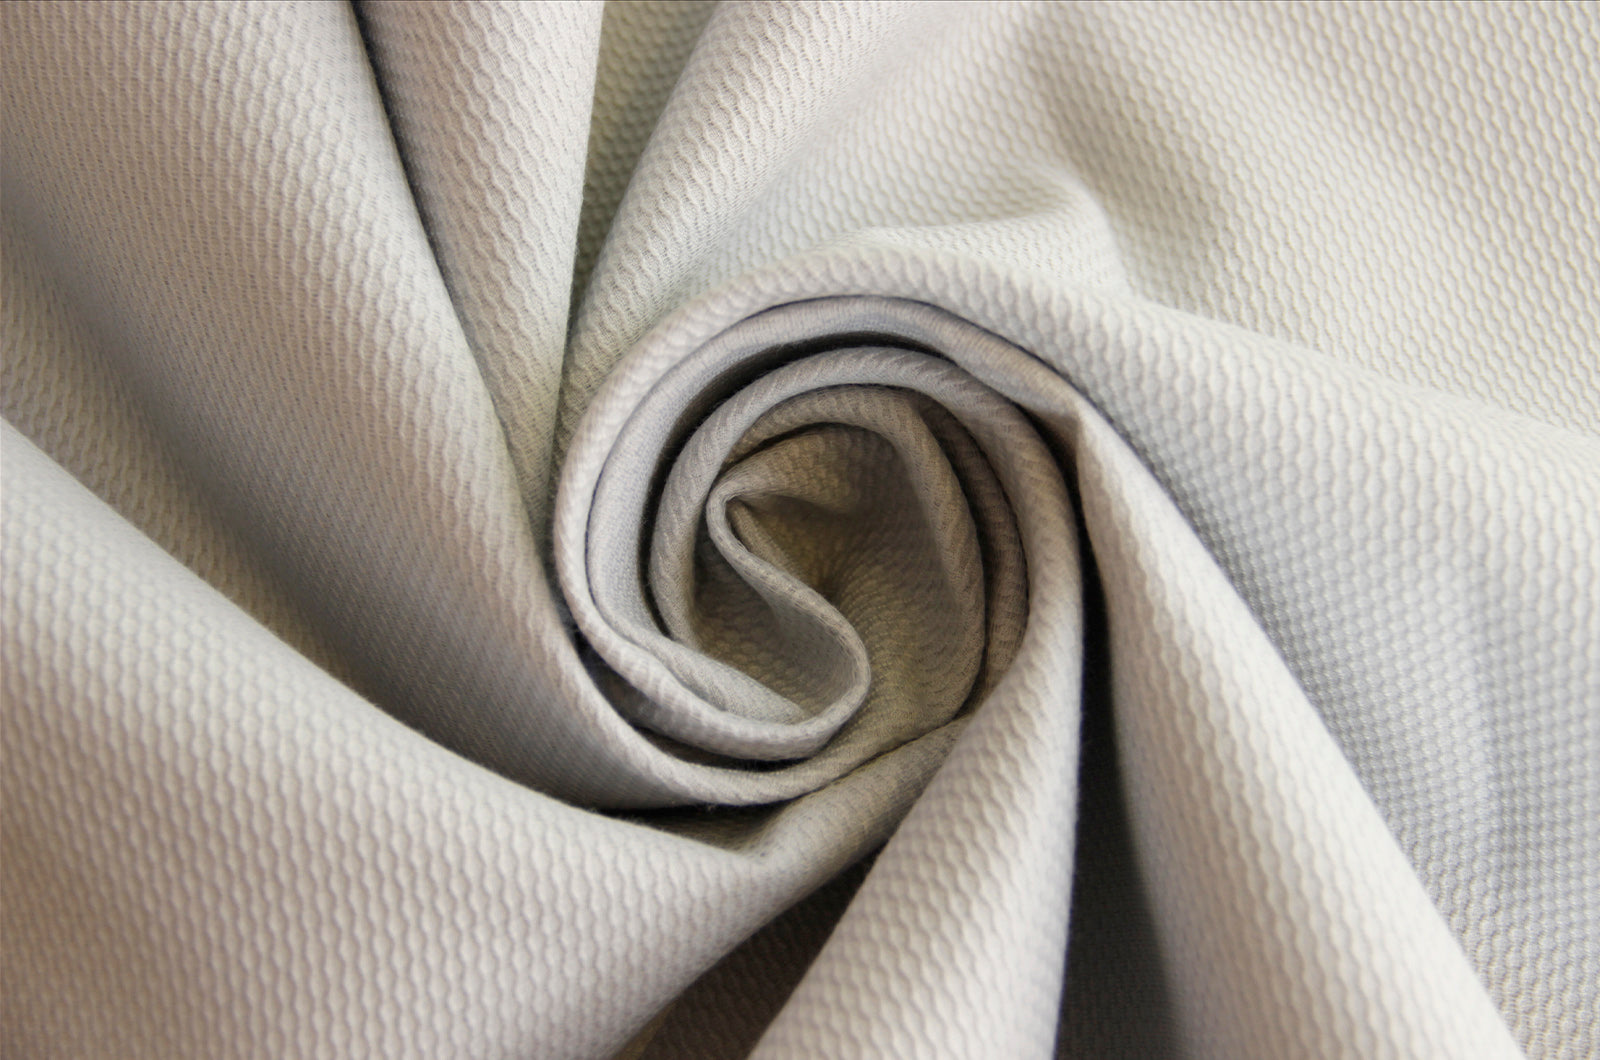 Cotton piqué plain * From 50 cm